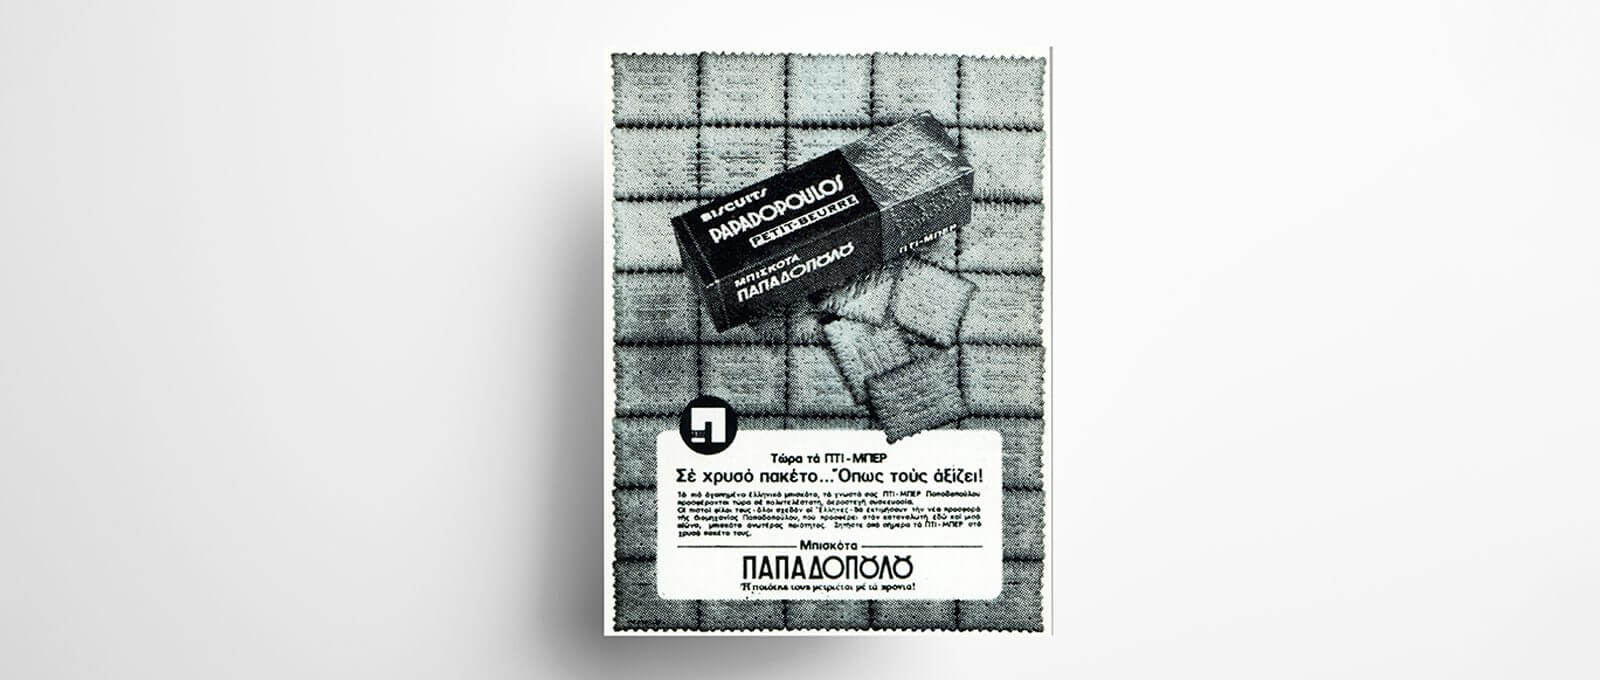 Δεκαετία 1970. Διαφημιστική καταχώριση για τα Πτι Μπερ Παπαδοπούλου σε χρυσό πακέτο. 